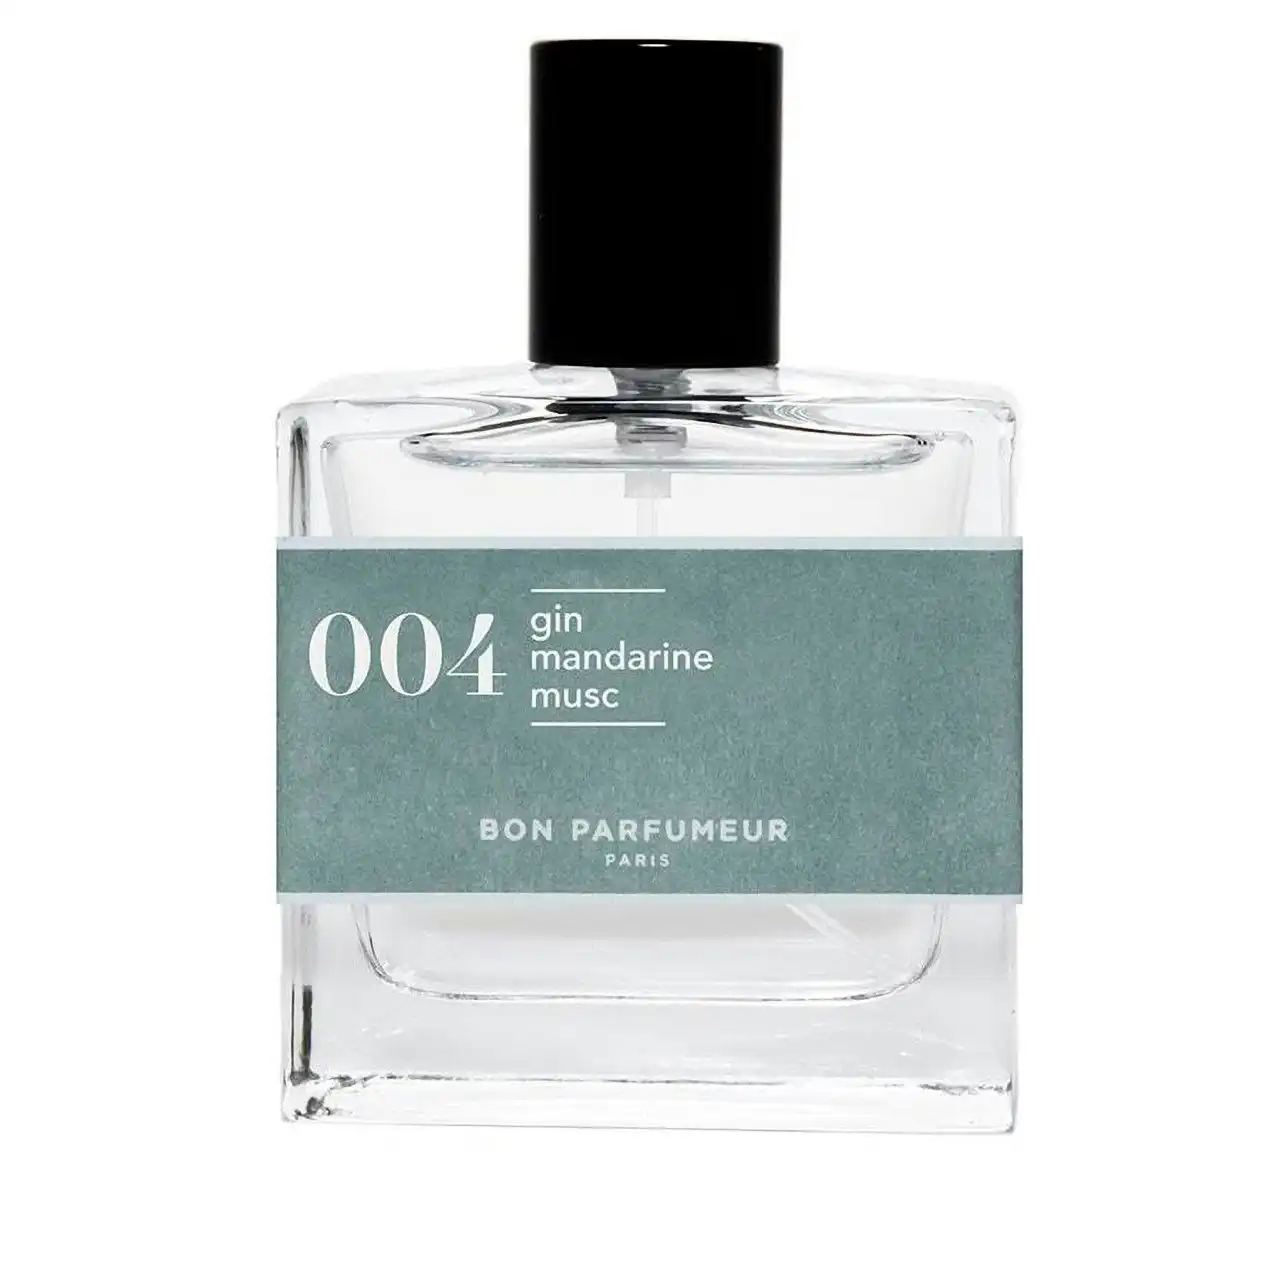 Bon Parfumeur 30ml Eau De Parfum 004 Cologne EDP Fragrance Spray For Men/Women